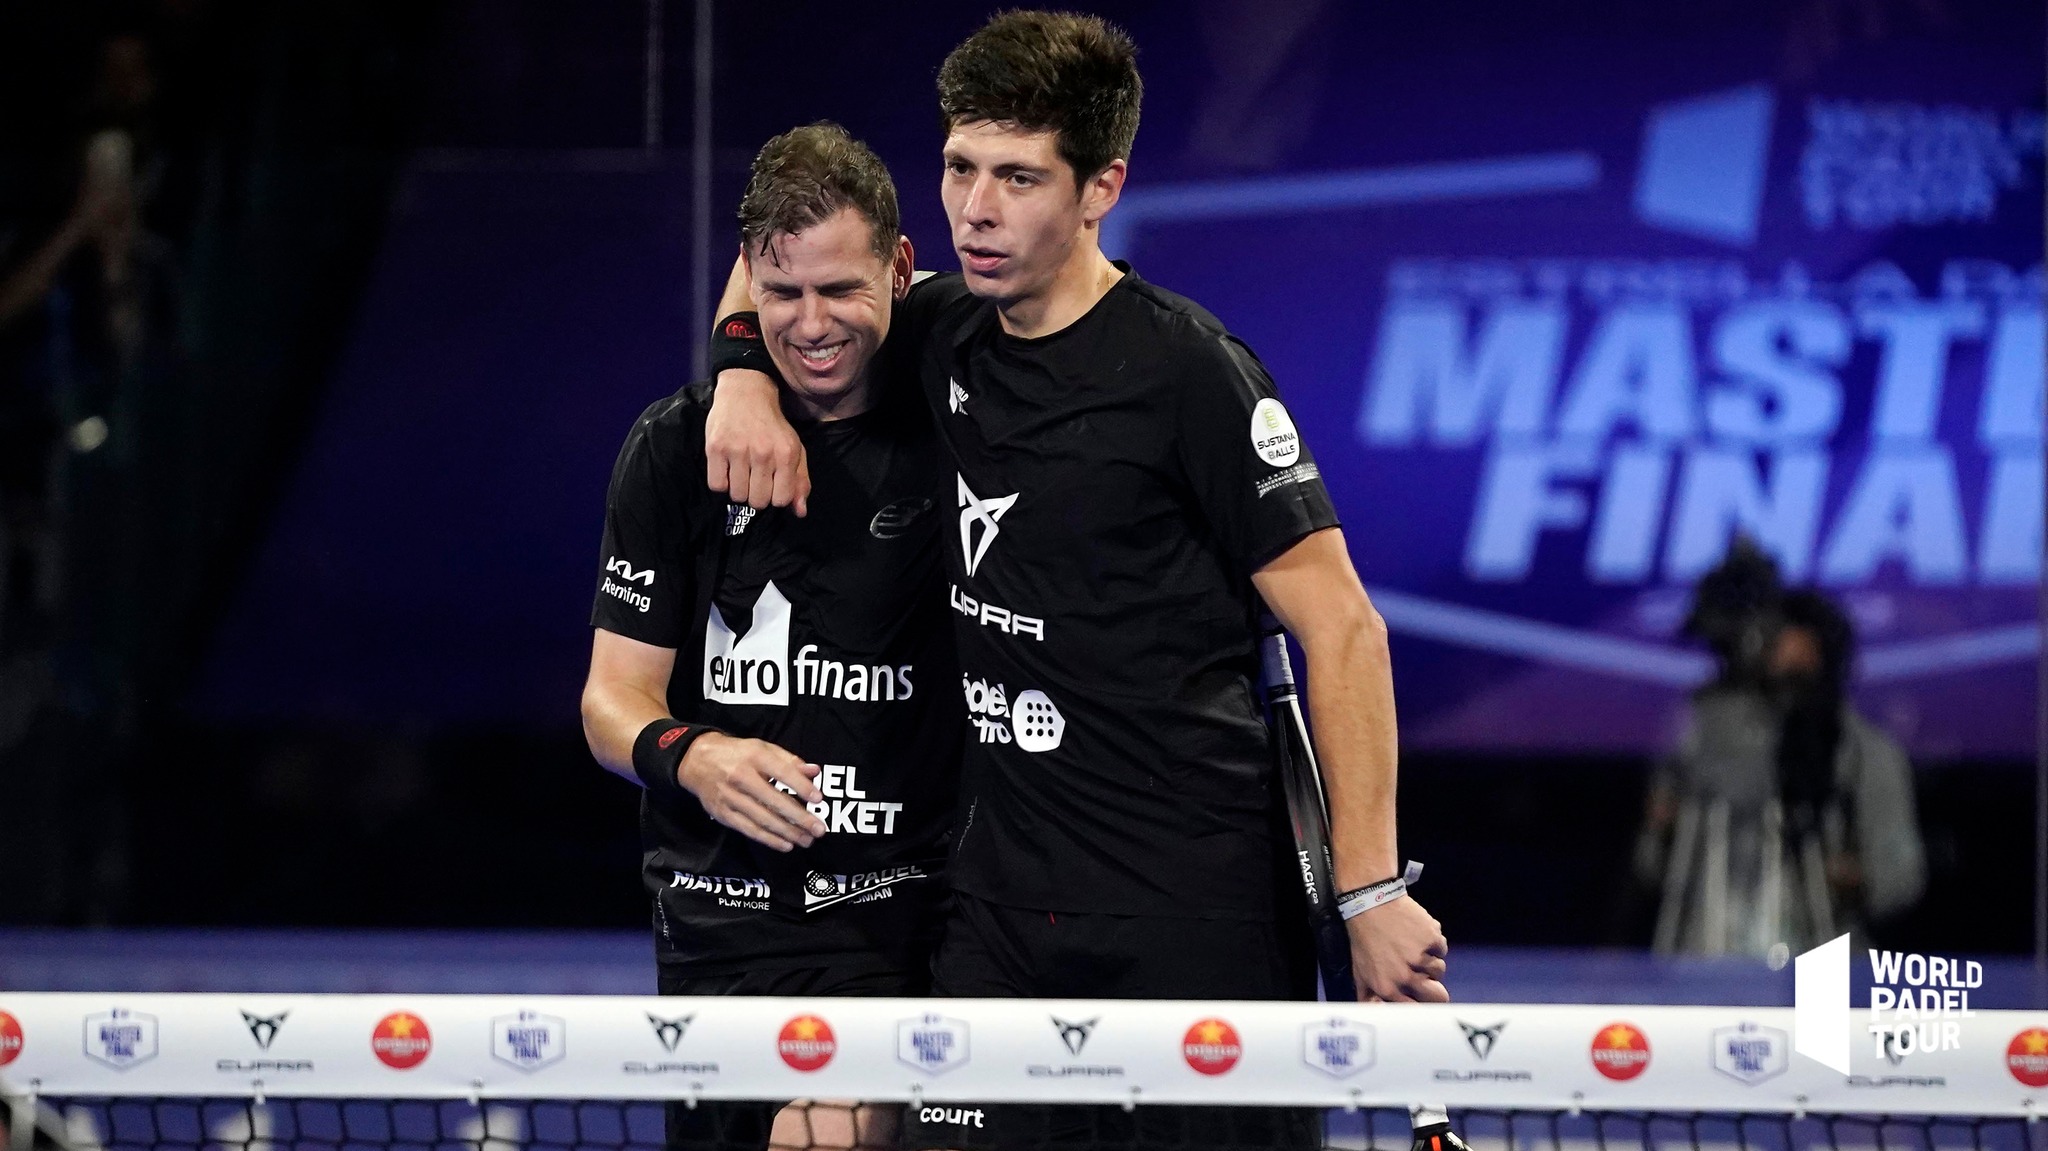 Navarro et Tello arrachent à Capra/Sanchez le plus beau match du Master Final